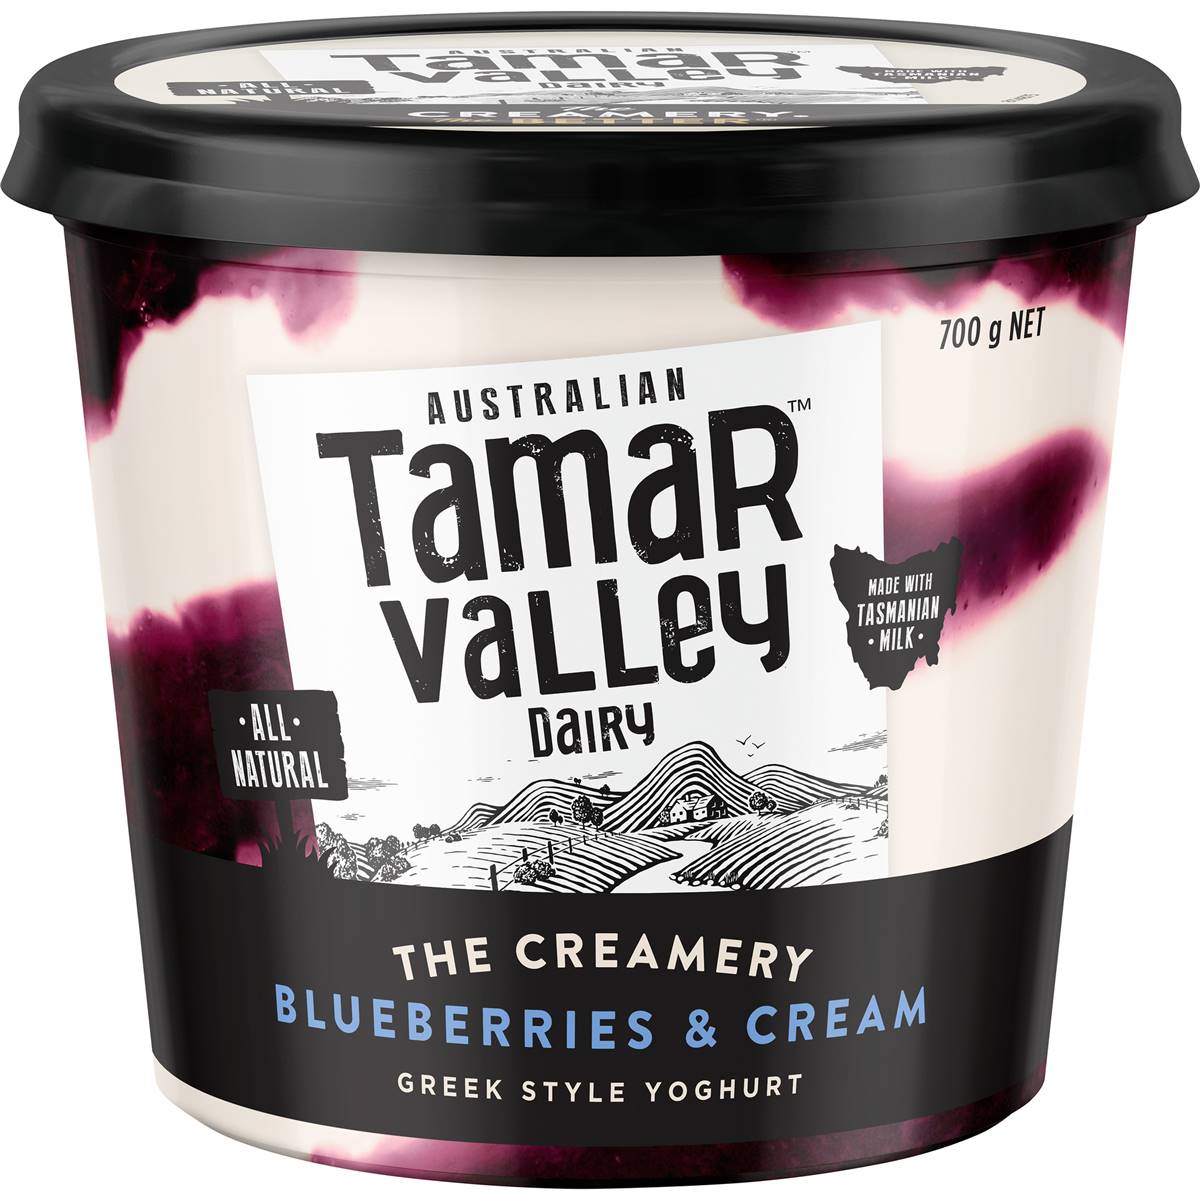 Calories in Tamar Valley Dairy Yoghurt Blueberry & Cream